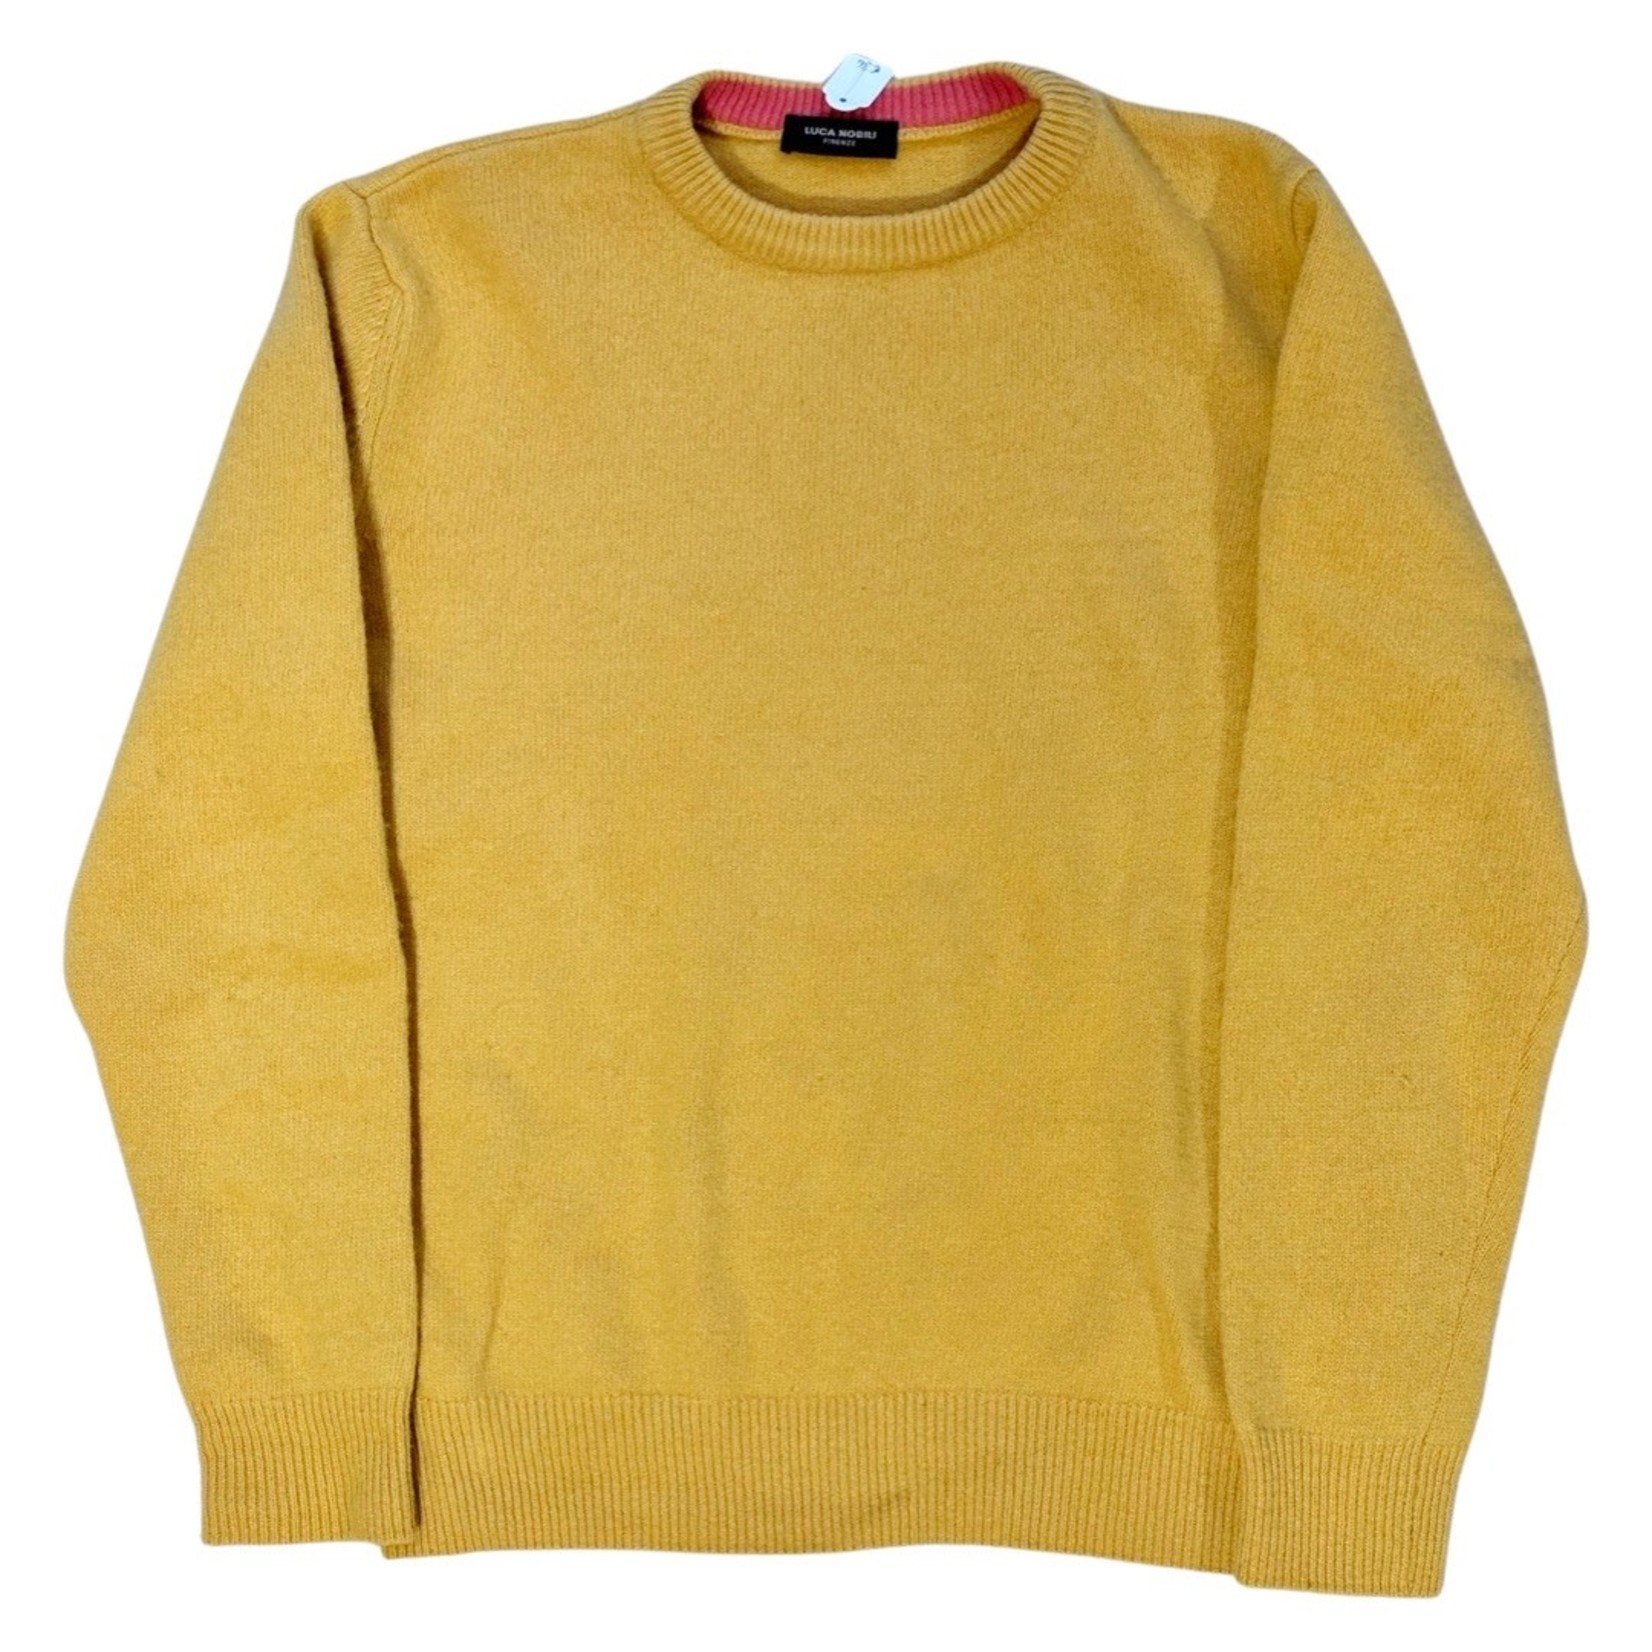 Vintage Vintage Luca Nobili sweater size M